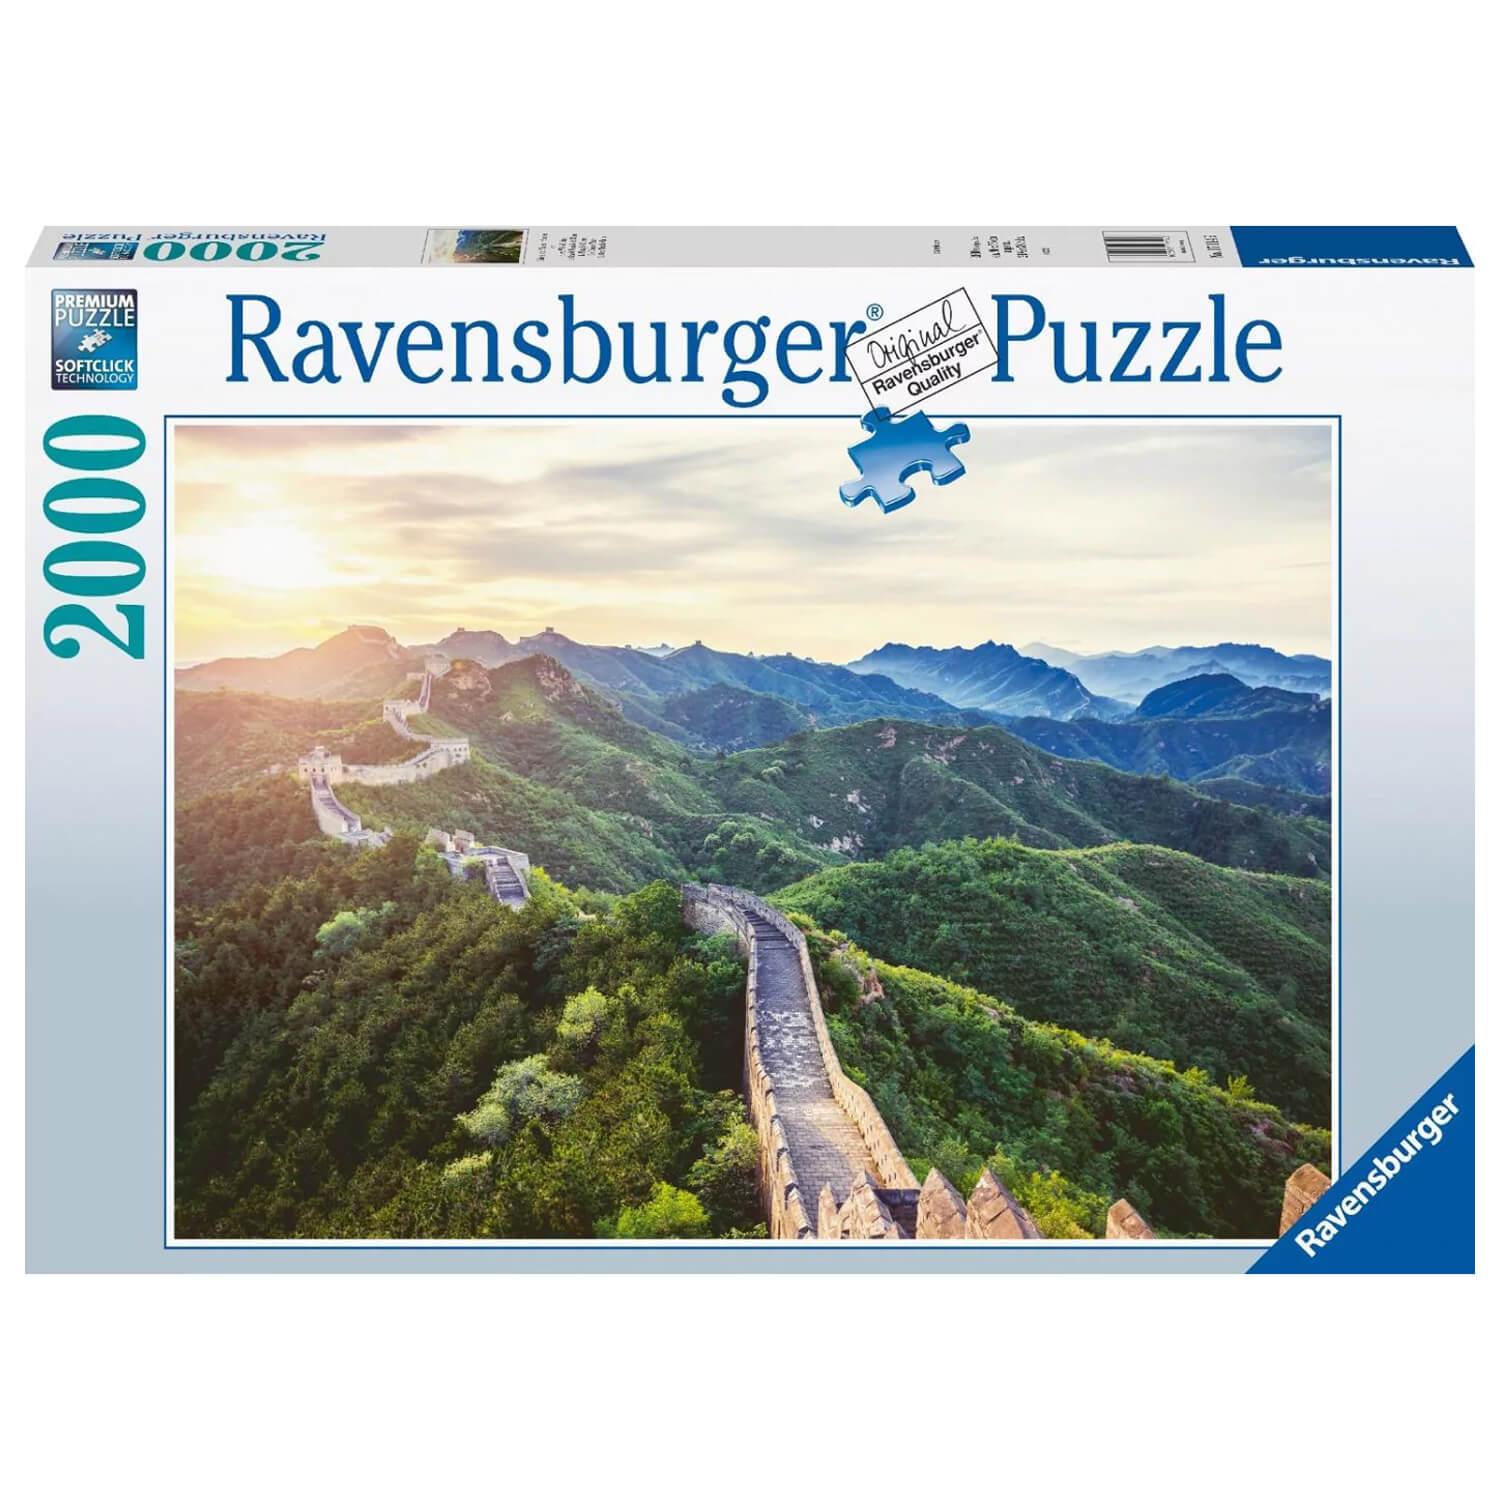 Puzzle 2000 pièces High Quality Collection - Paysage de Chine - Clementoni